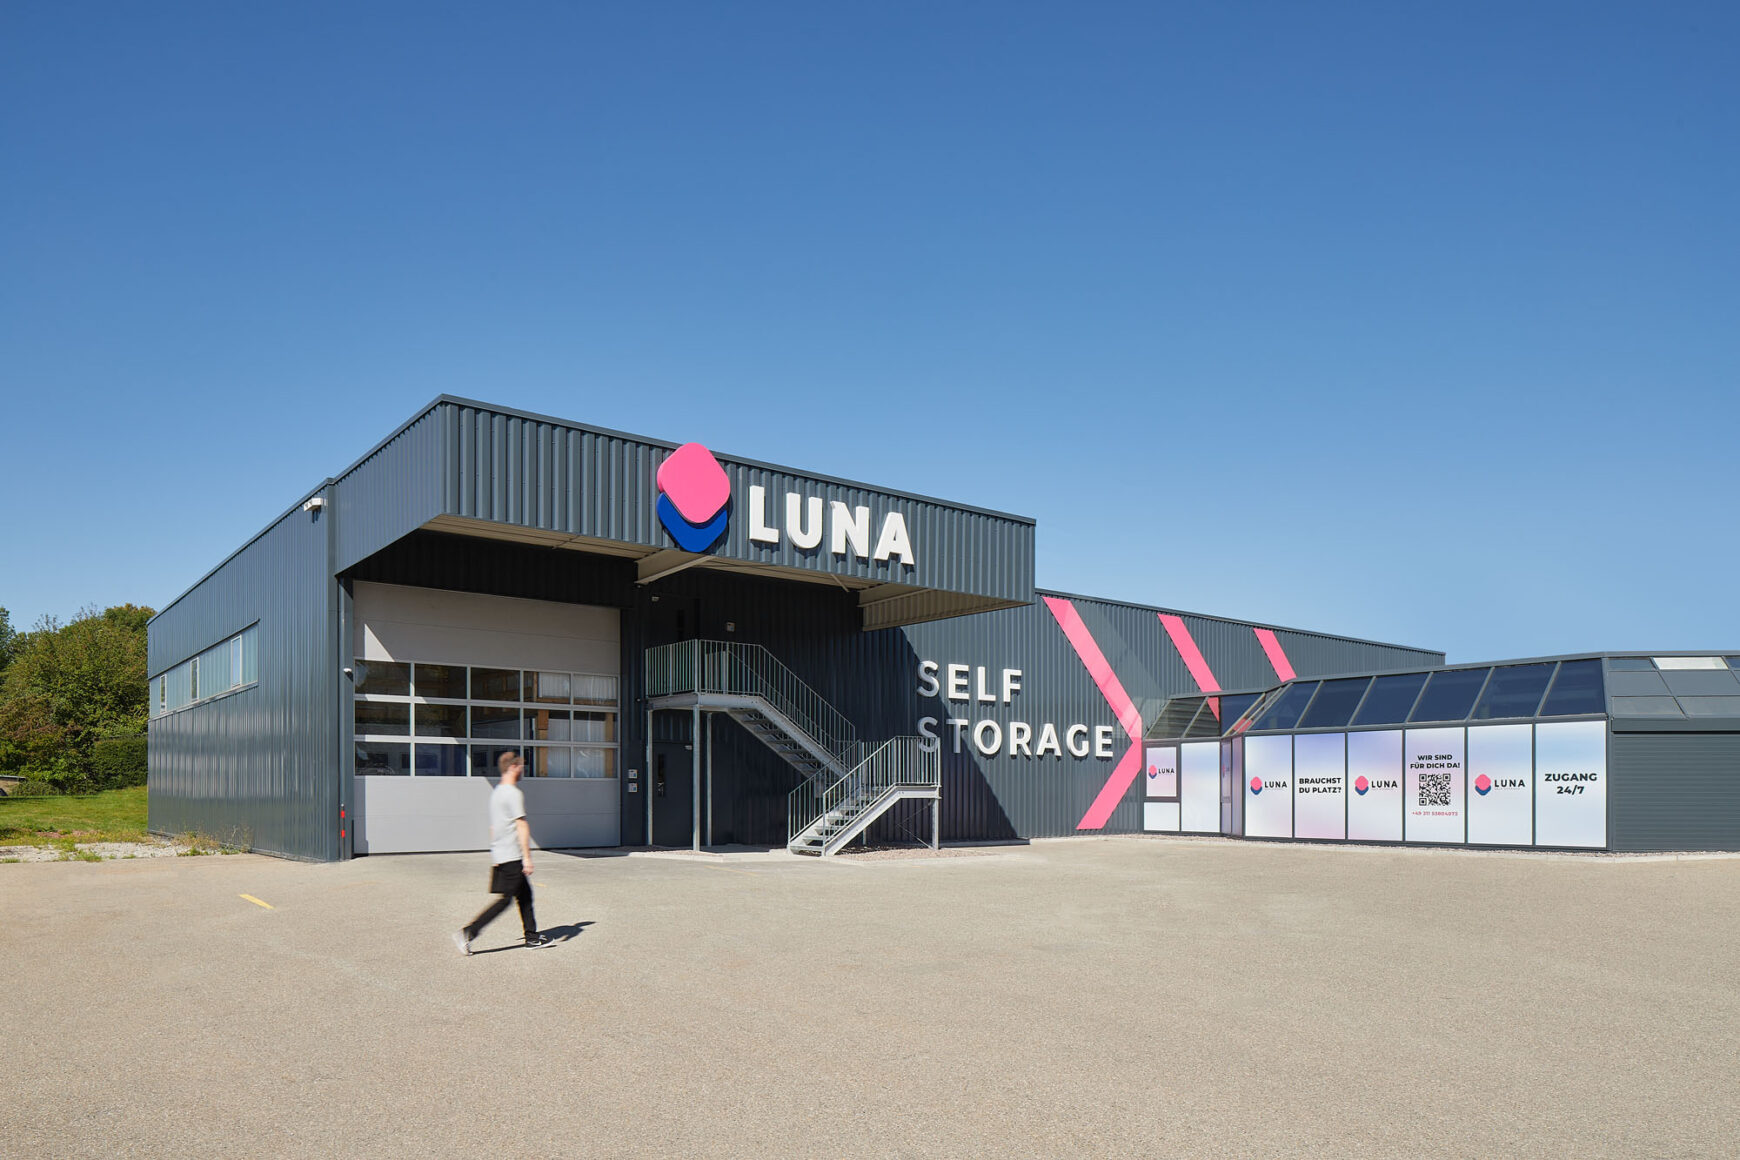 Luna Storage - Lagerraum - Lagercontainer - Lagerhallen - Lagerfläche mieten in Villingen-Schwenningen